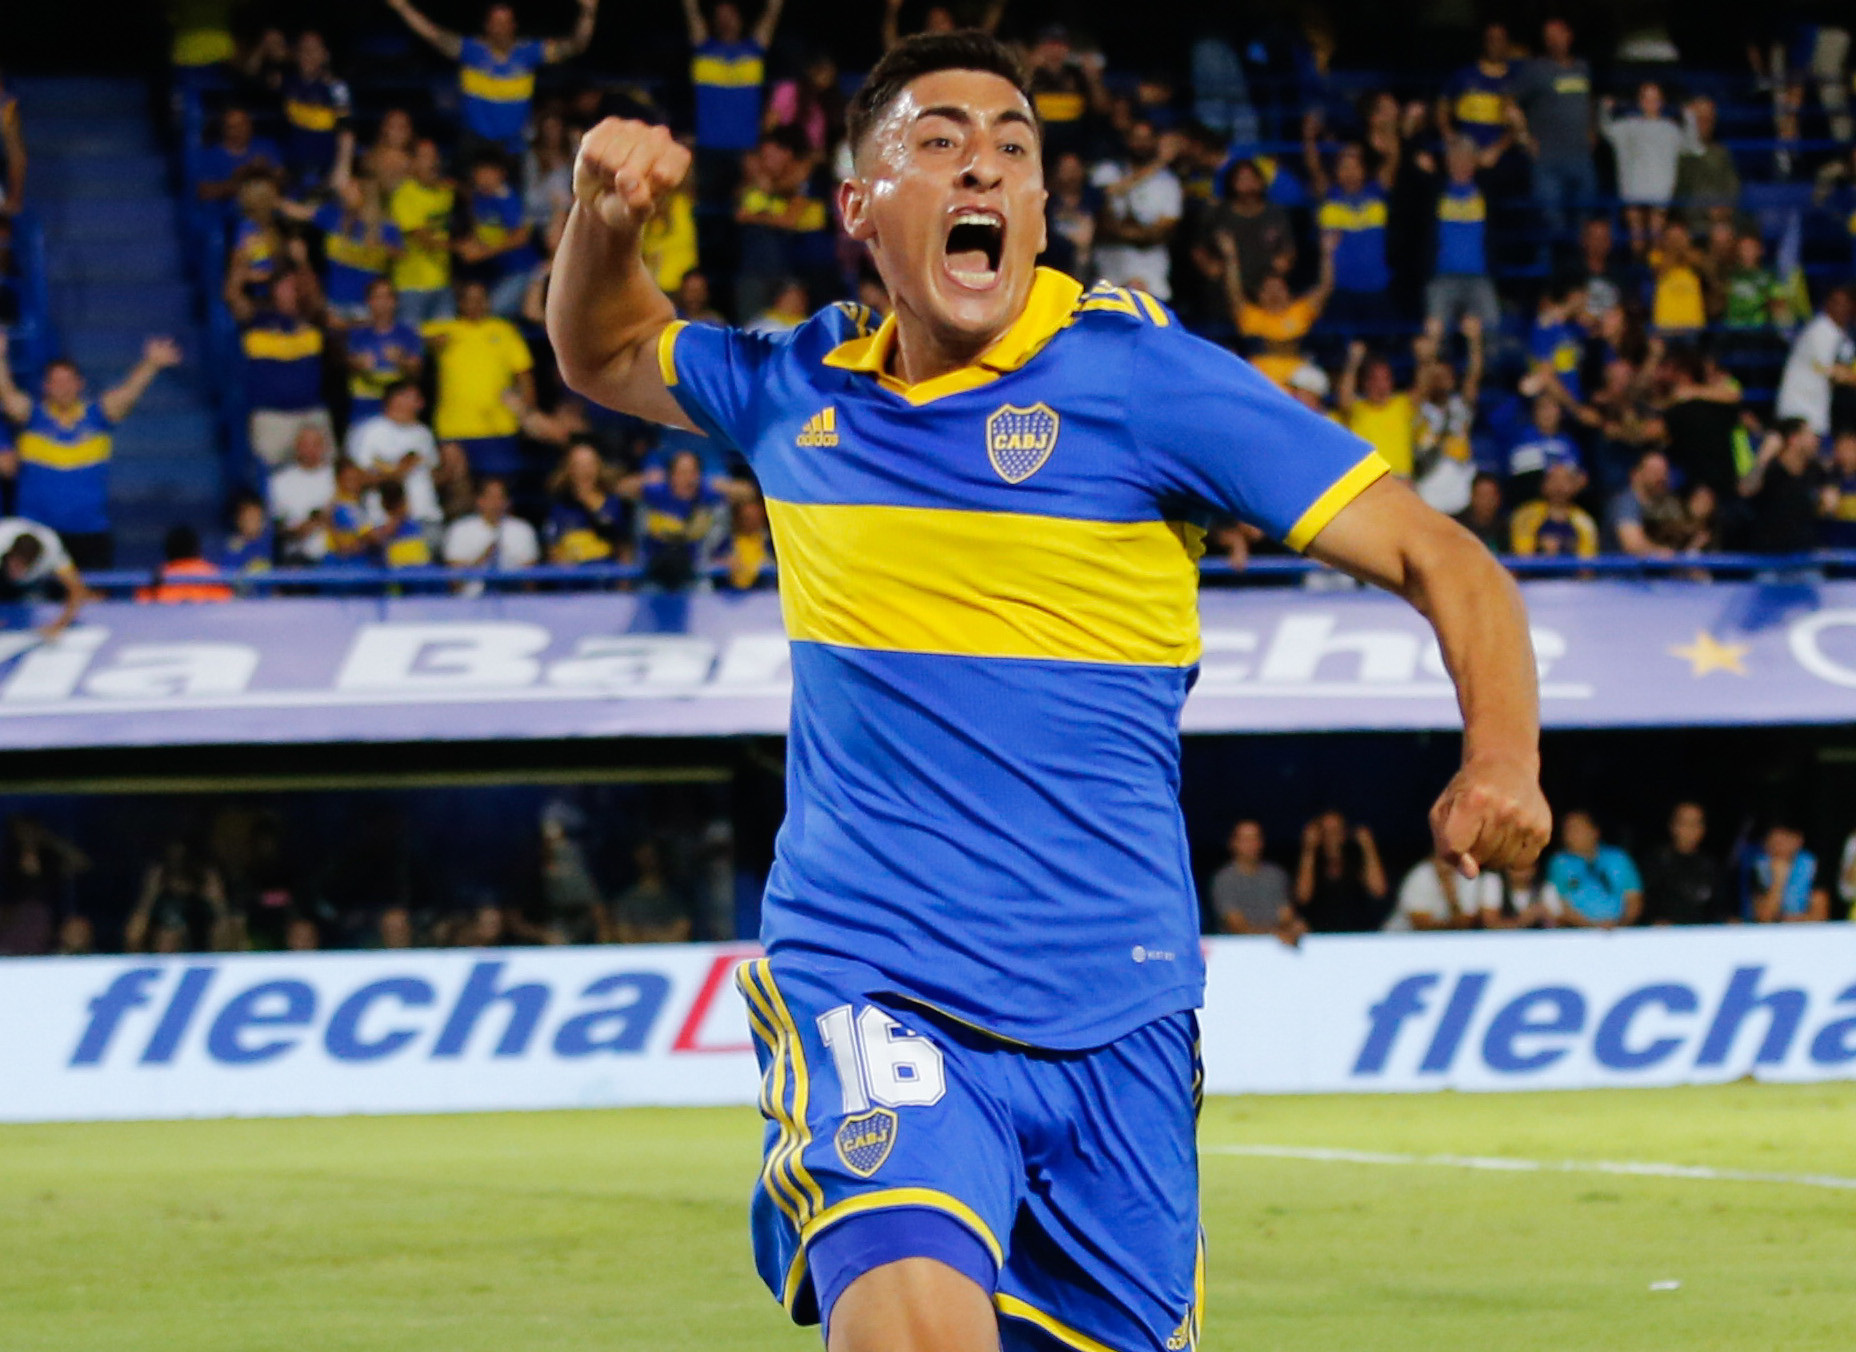 Ibarra le renovó la confianza a Miguel Merentiel que viene de marcar su primer gol con la camiseta de Boca Juniors (Fotobaires)